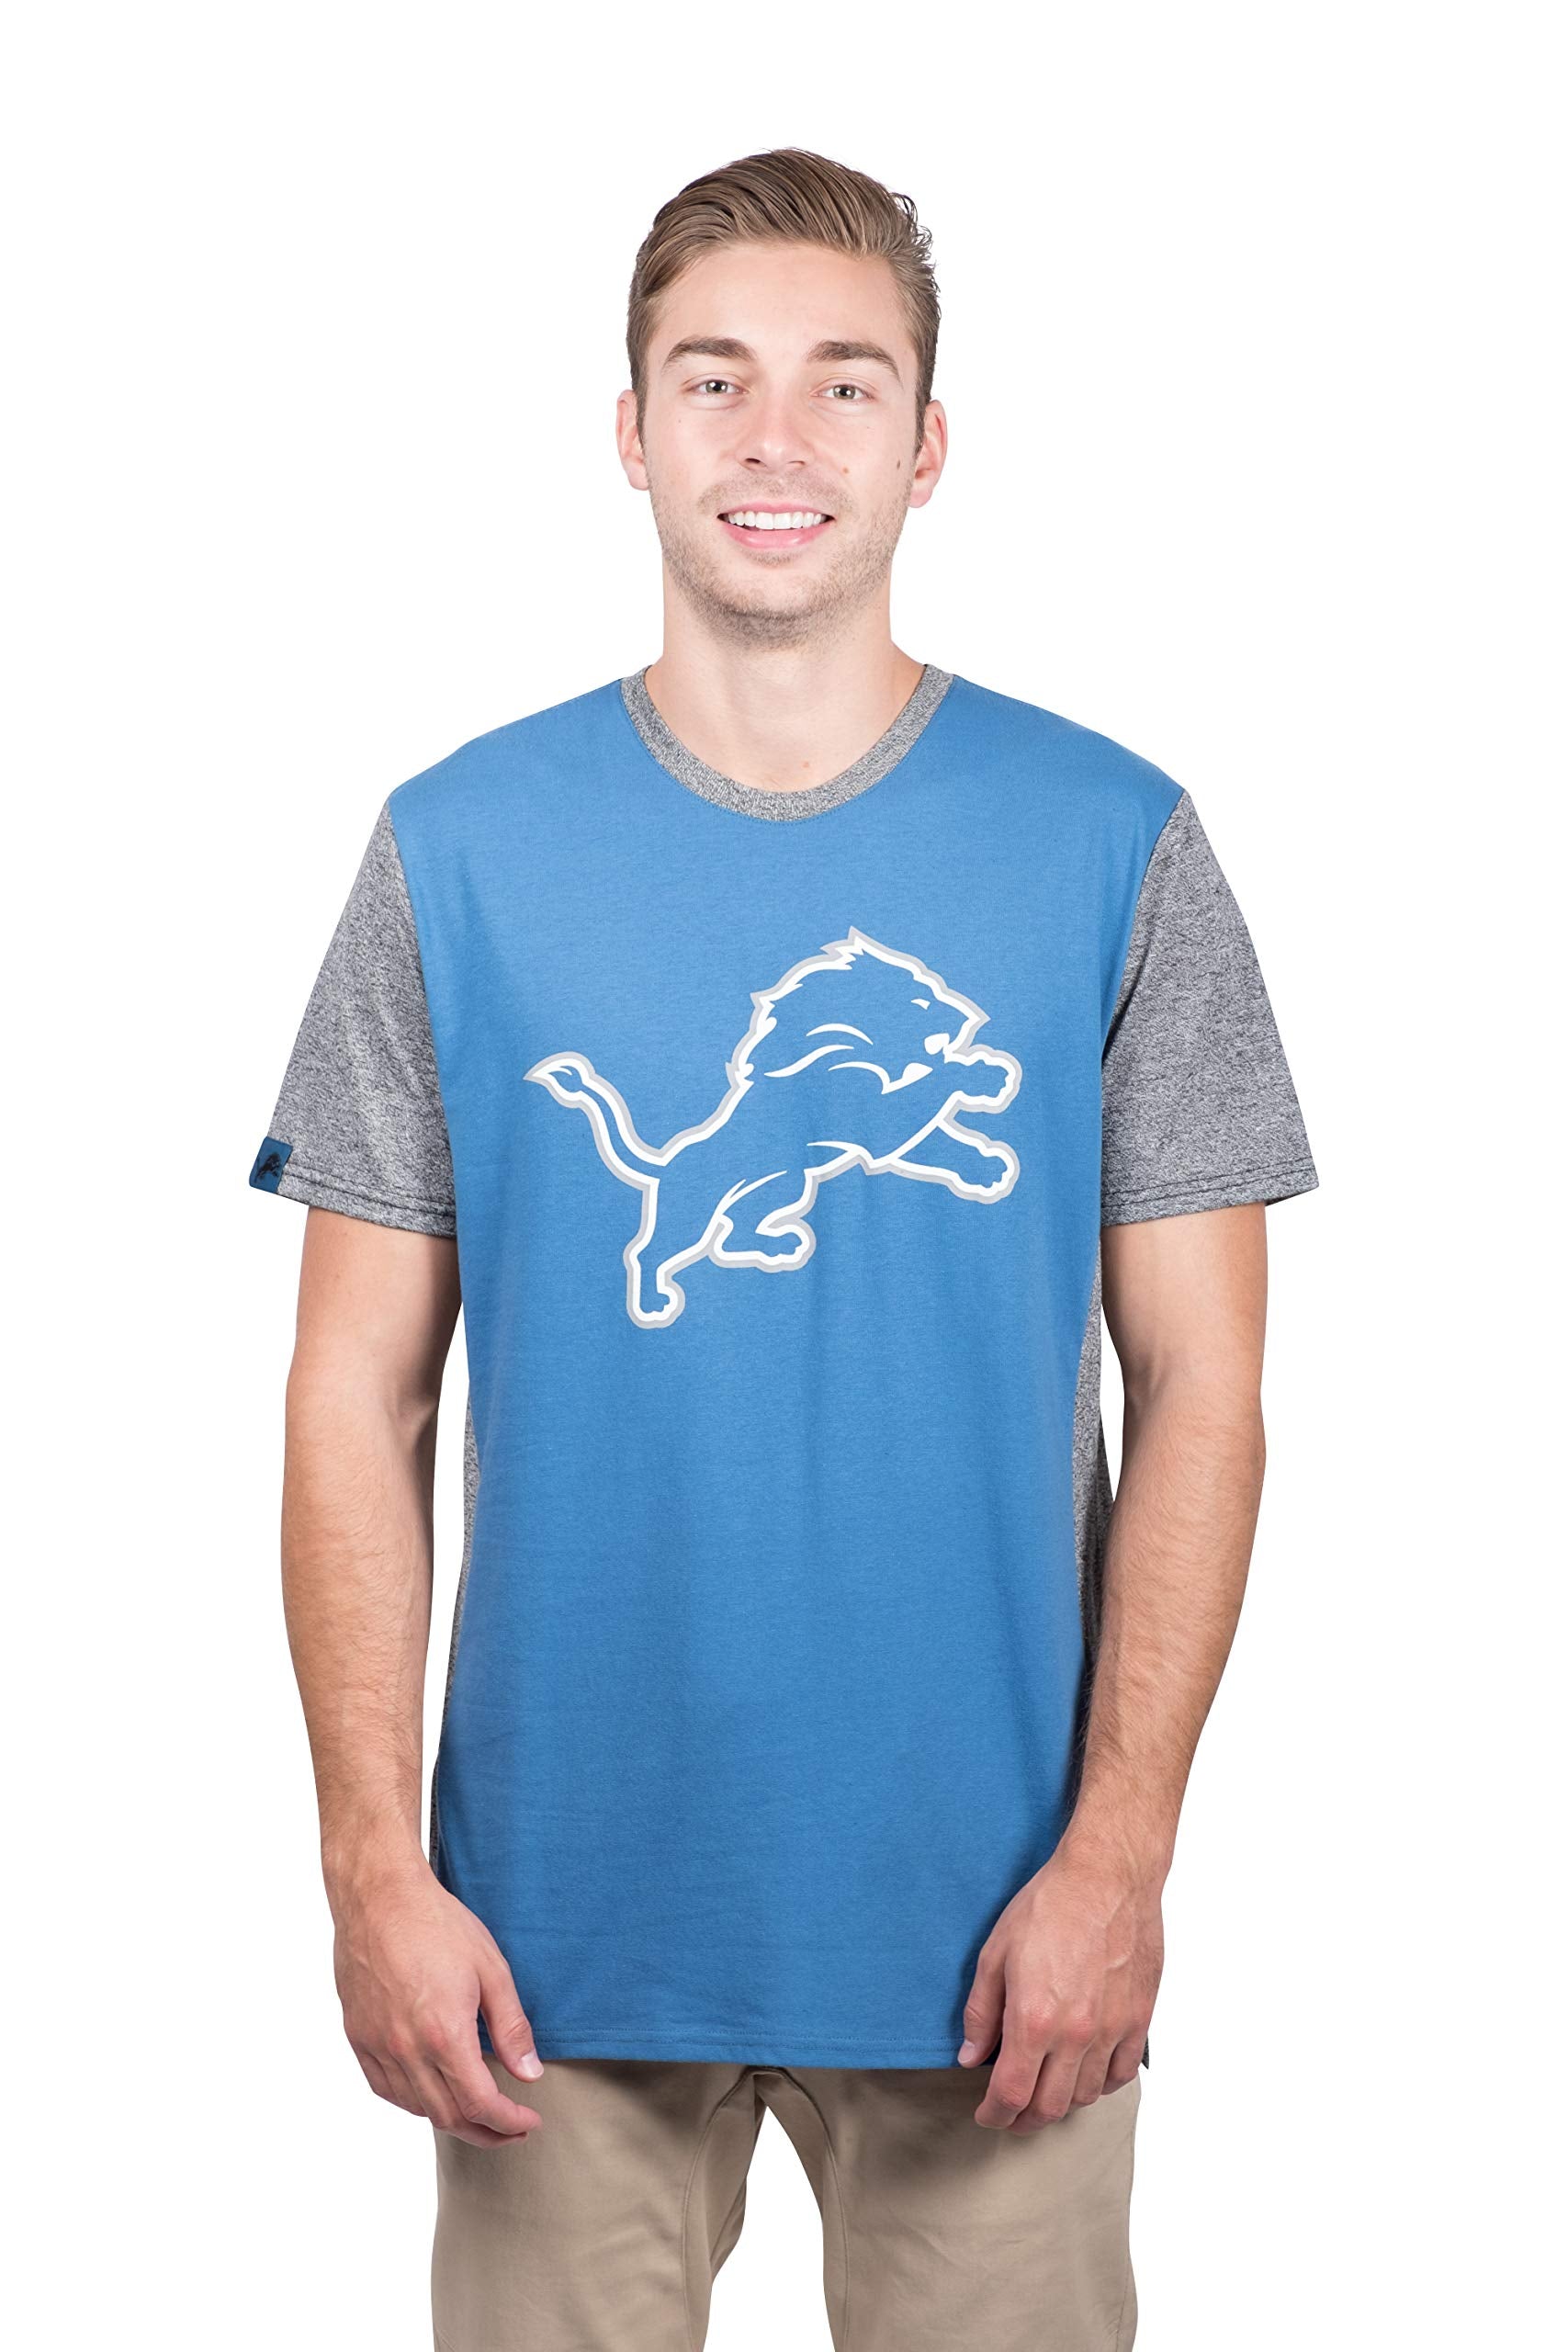 Ultra Game NFL Detroit Lions Mens T-Shirt Raglan Block Short Sleeve Tee Shirt|Detroit Lions